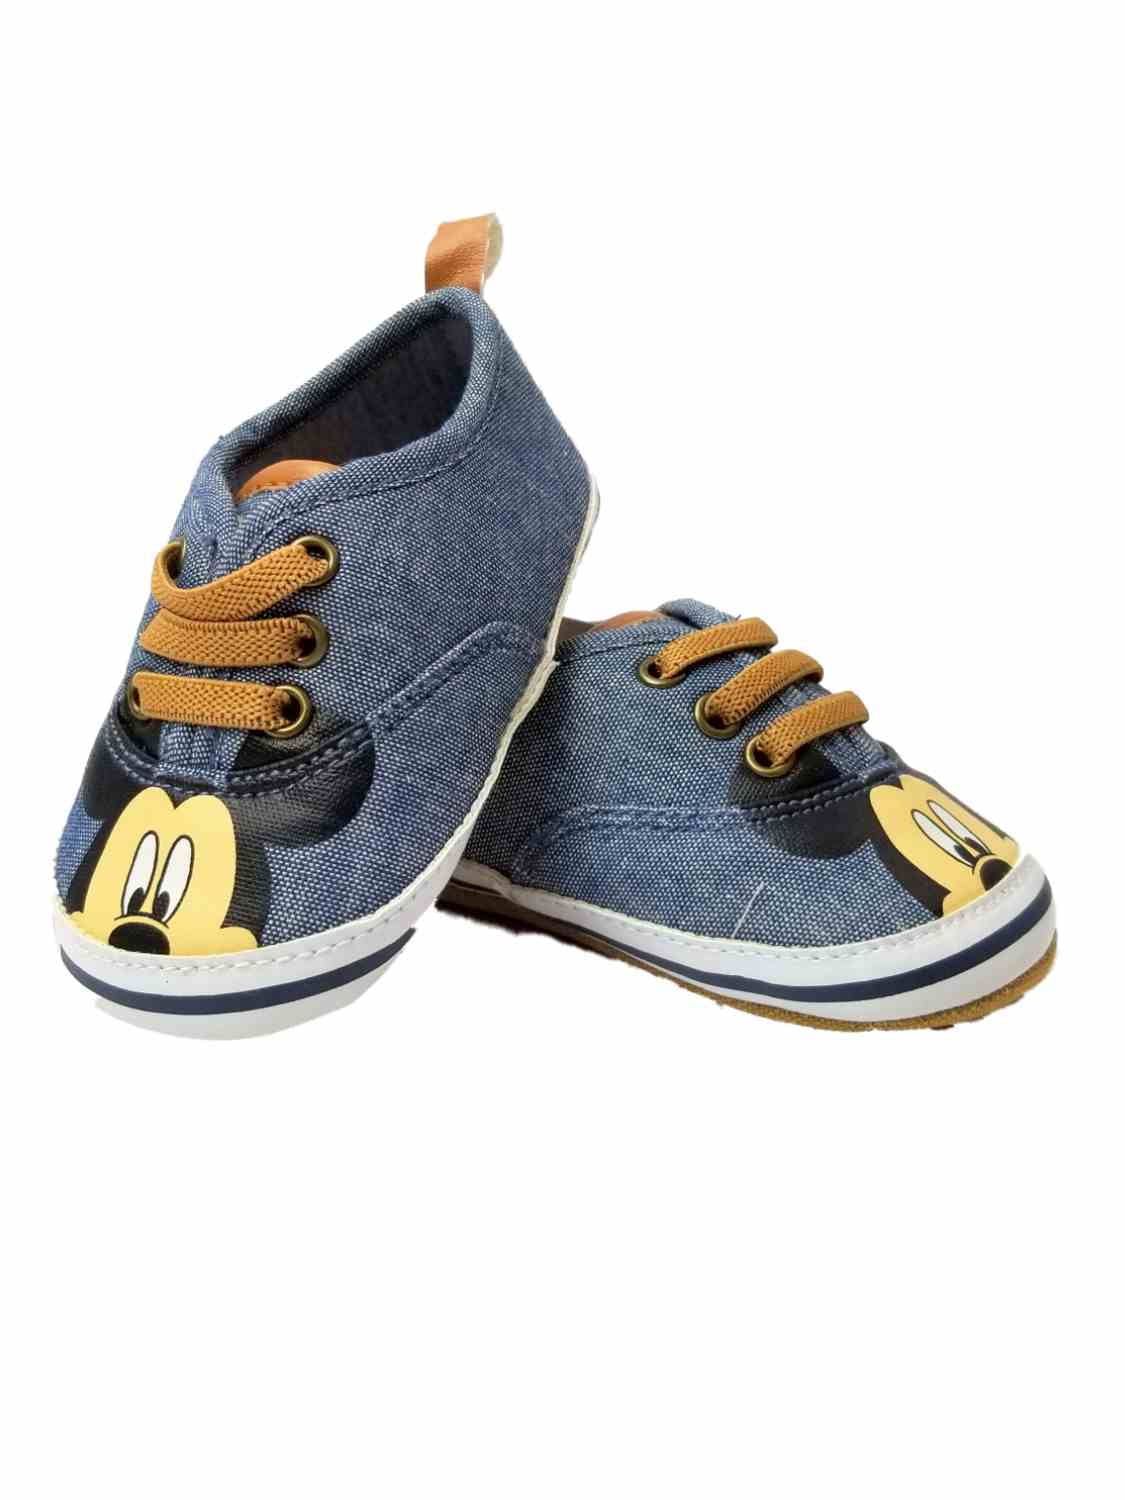 disney infant shoes